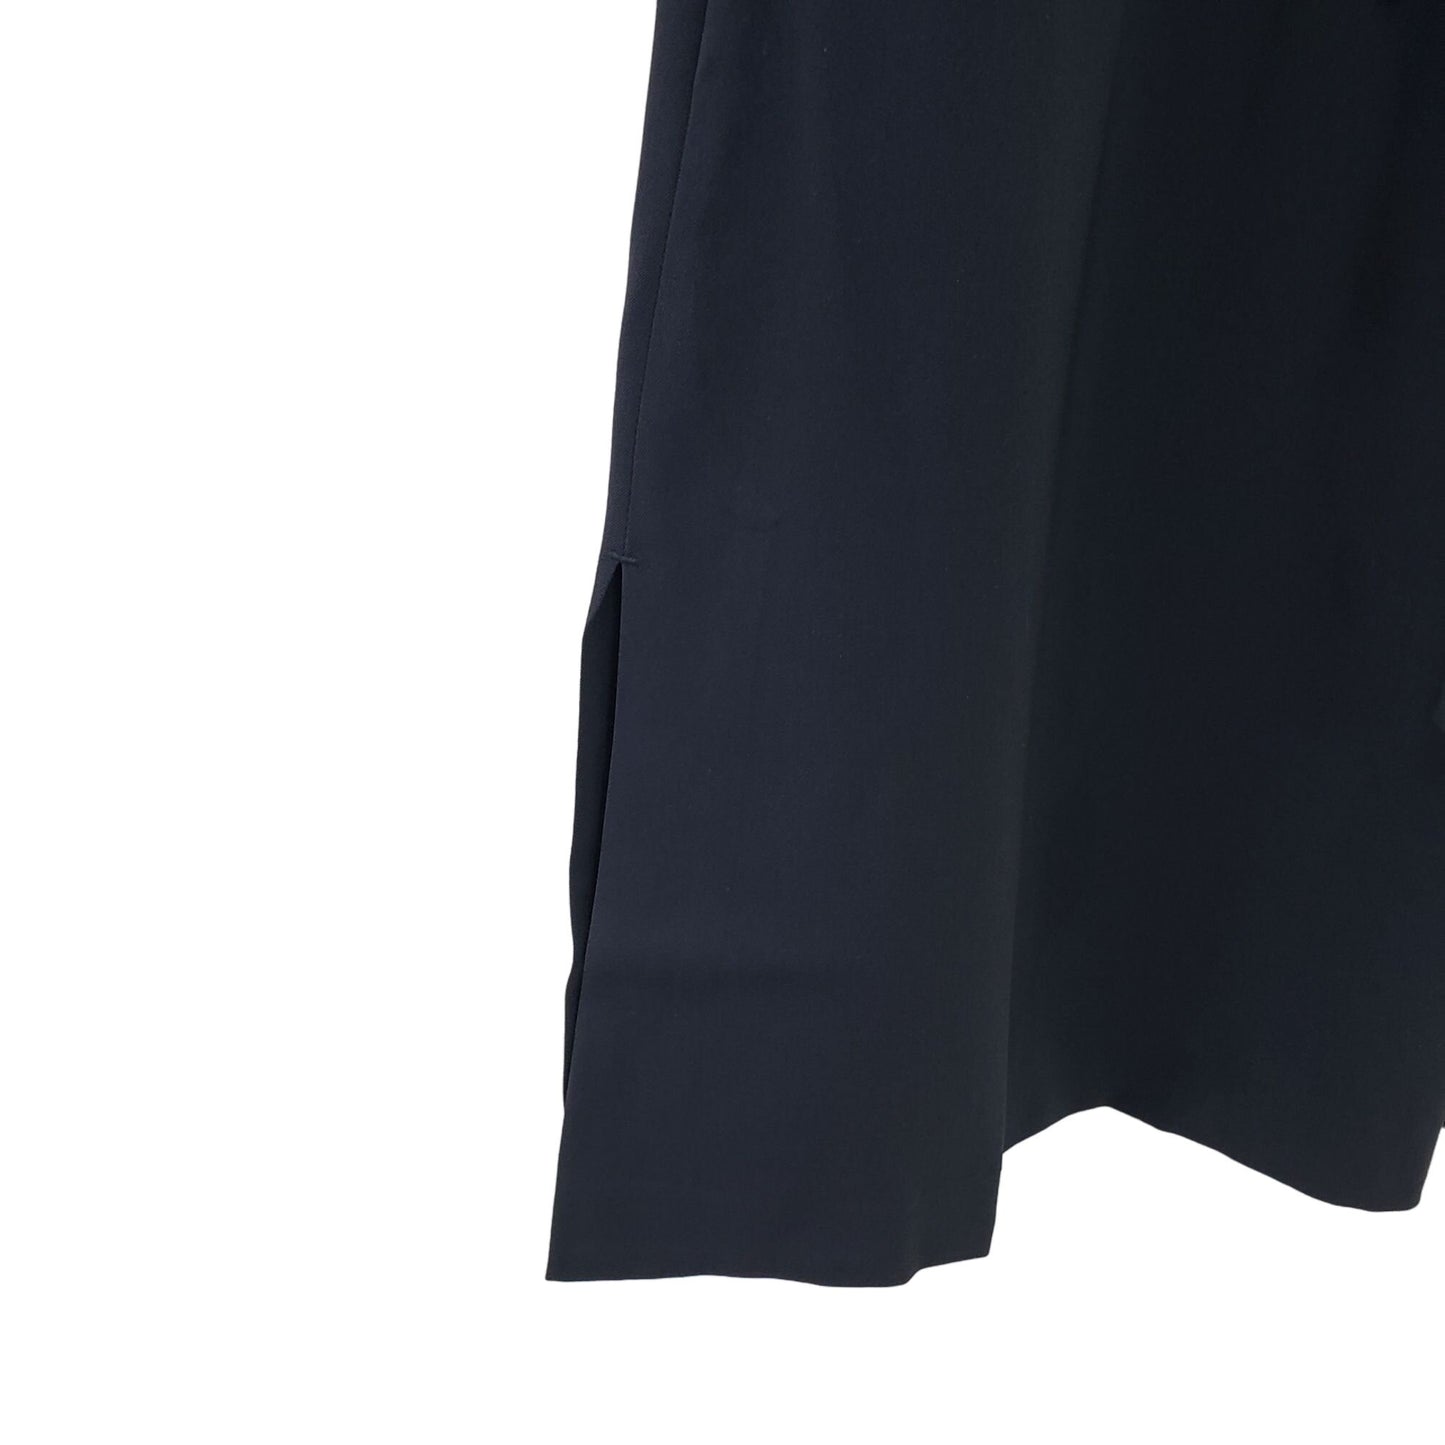 NWT Ministry of Supply Swift Sheath Dress Size XS (2)